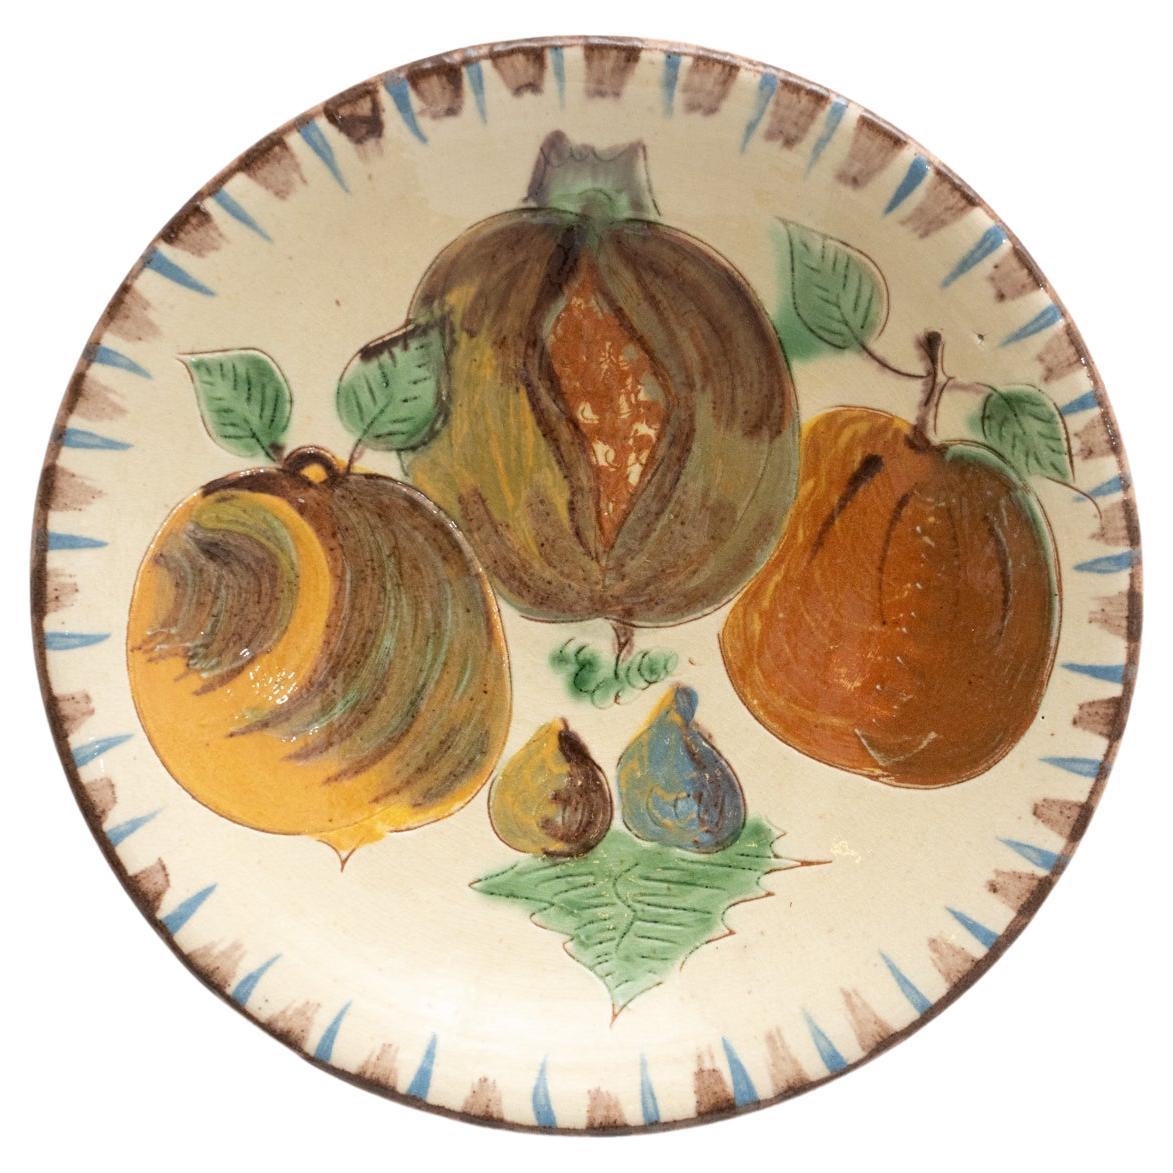 Assiette traditionnelle en céramique peinte à la main par l'artiste catalane Puigdemont, datant d'environ 1960